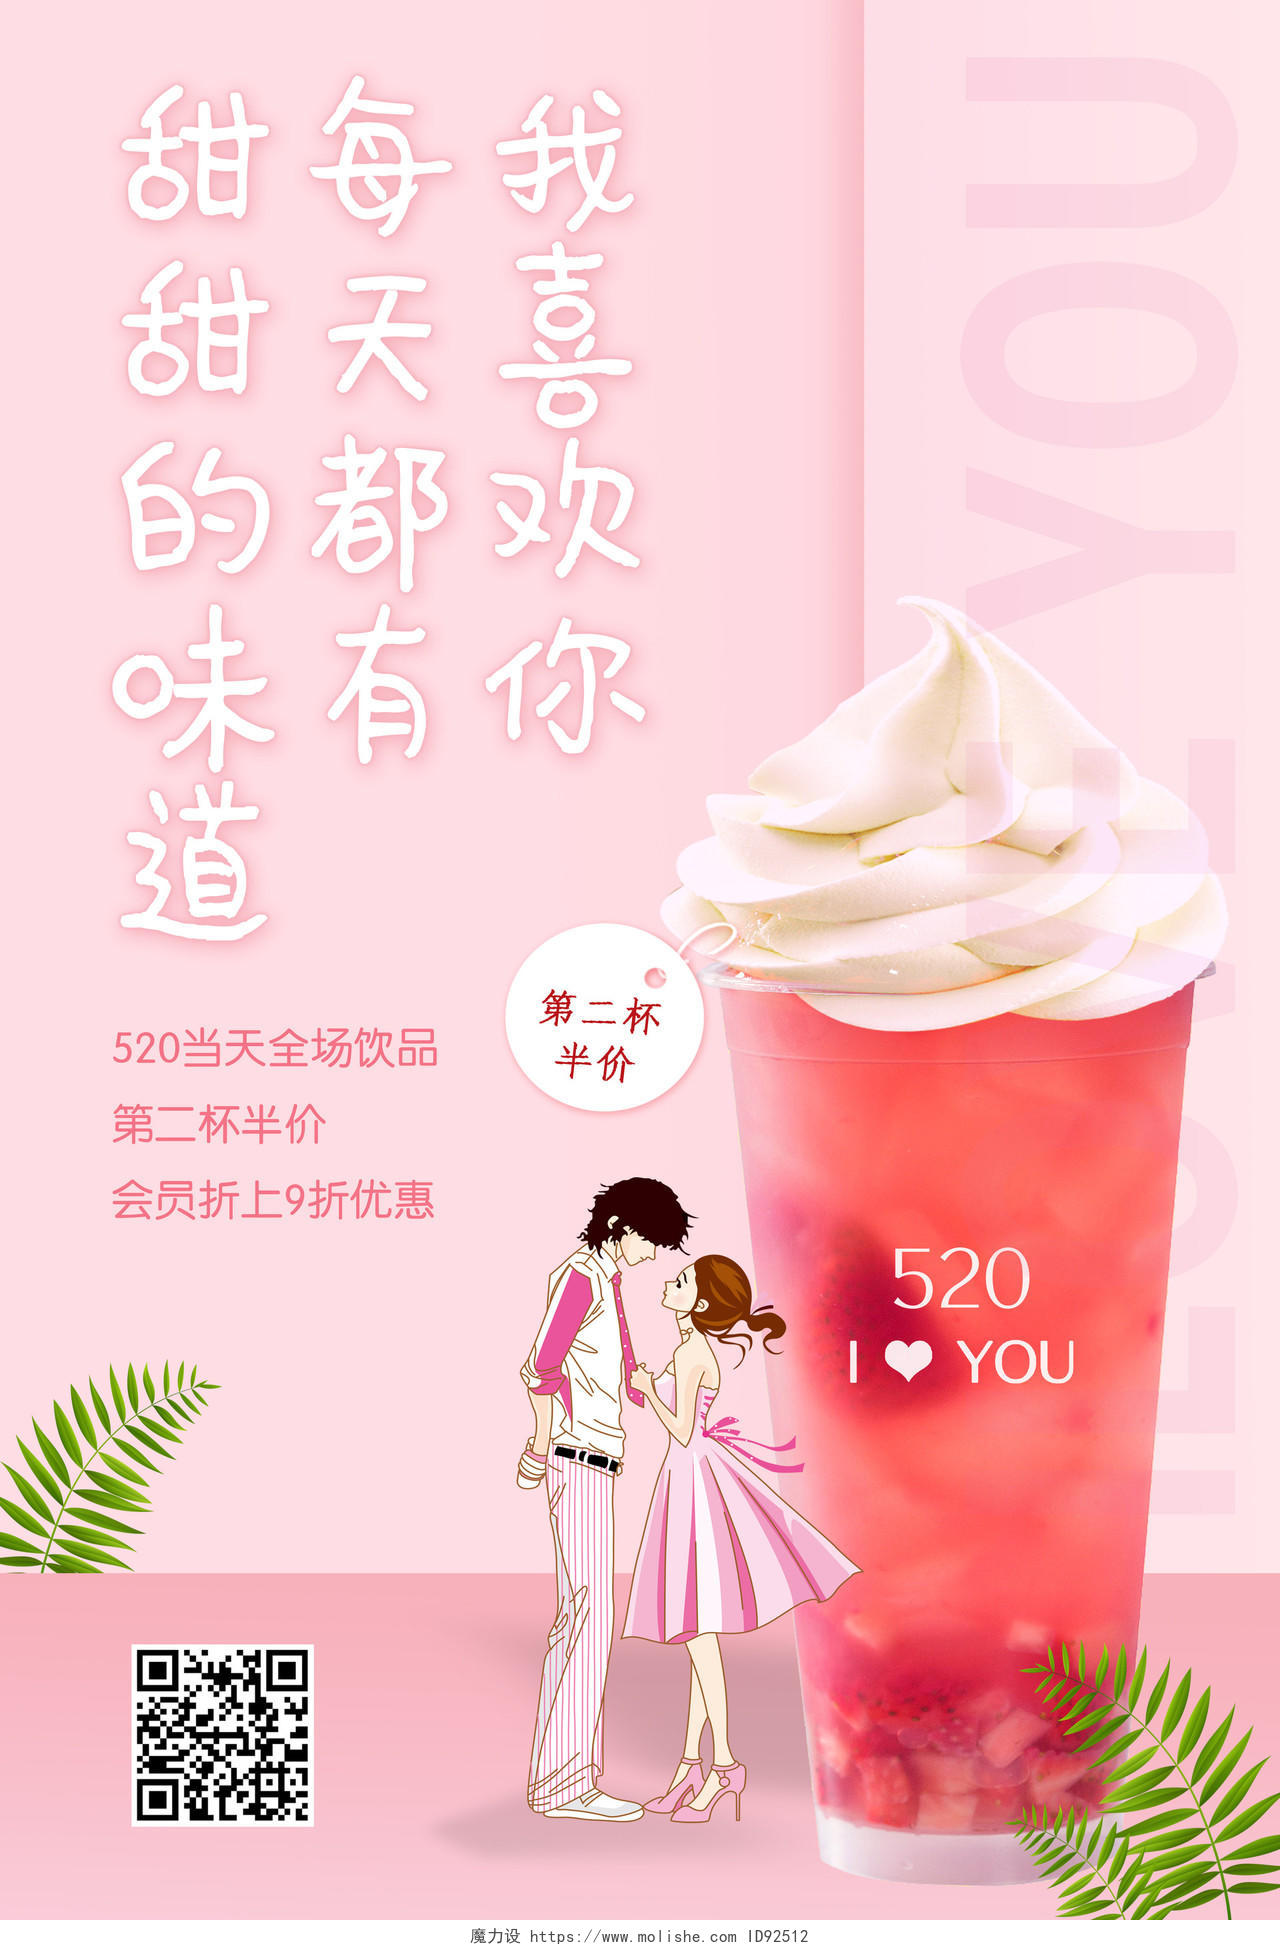 520饮品店促销网络情人节520爱情宣言促销广告饮料冰淇淋